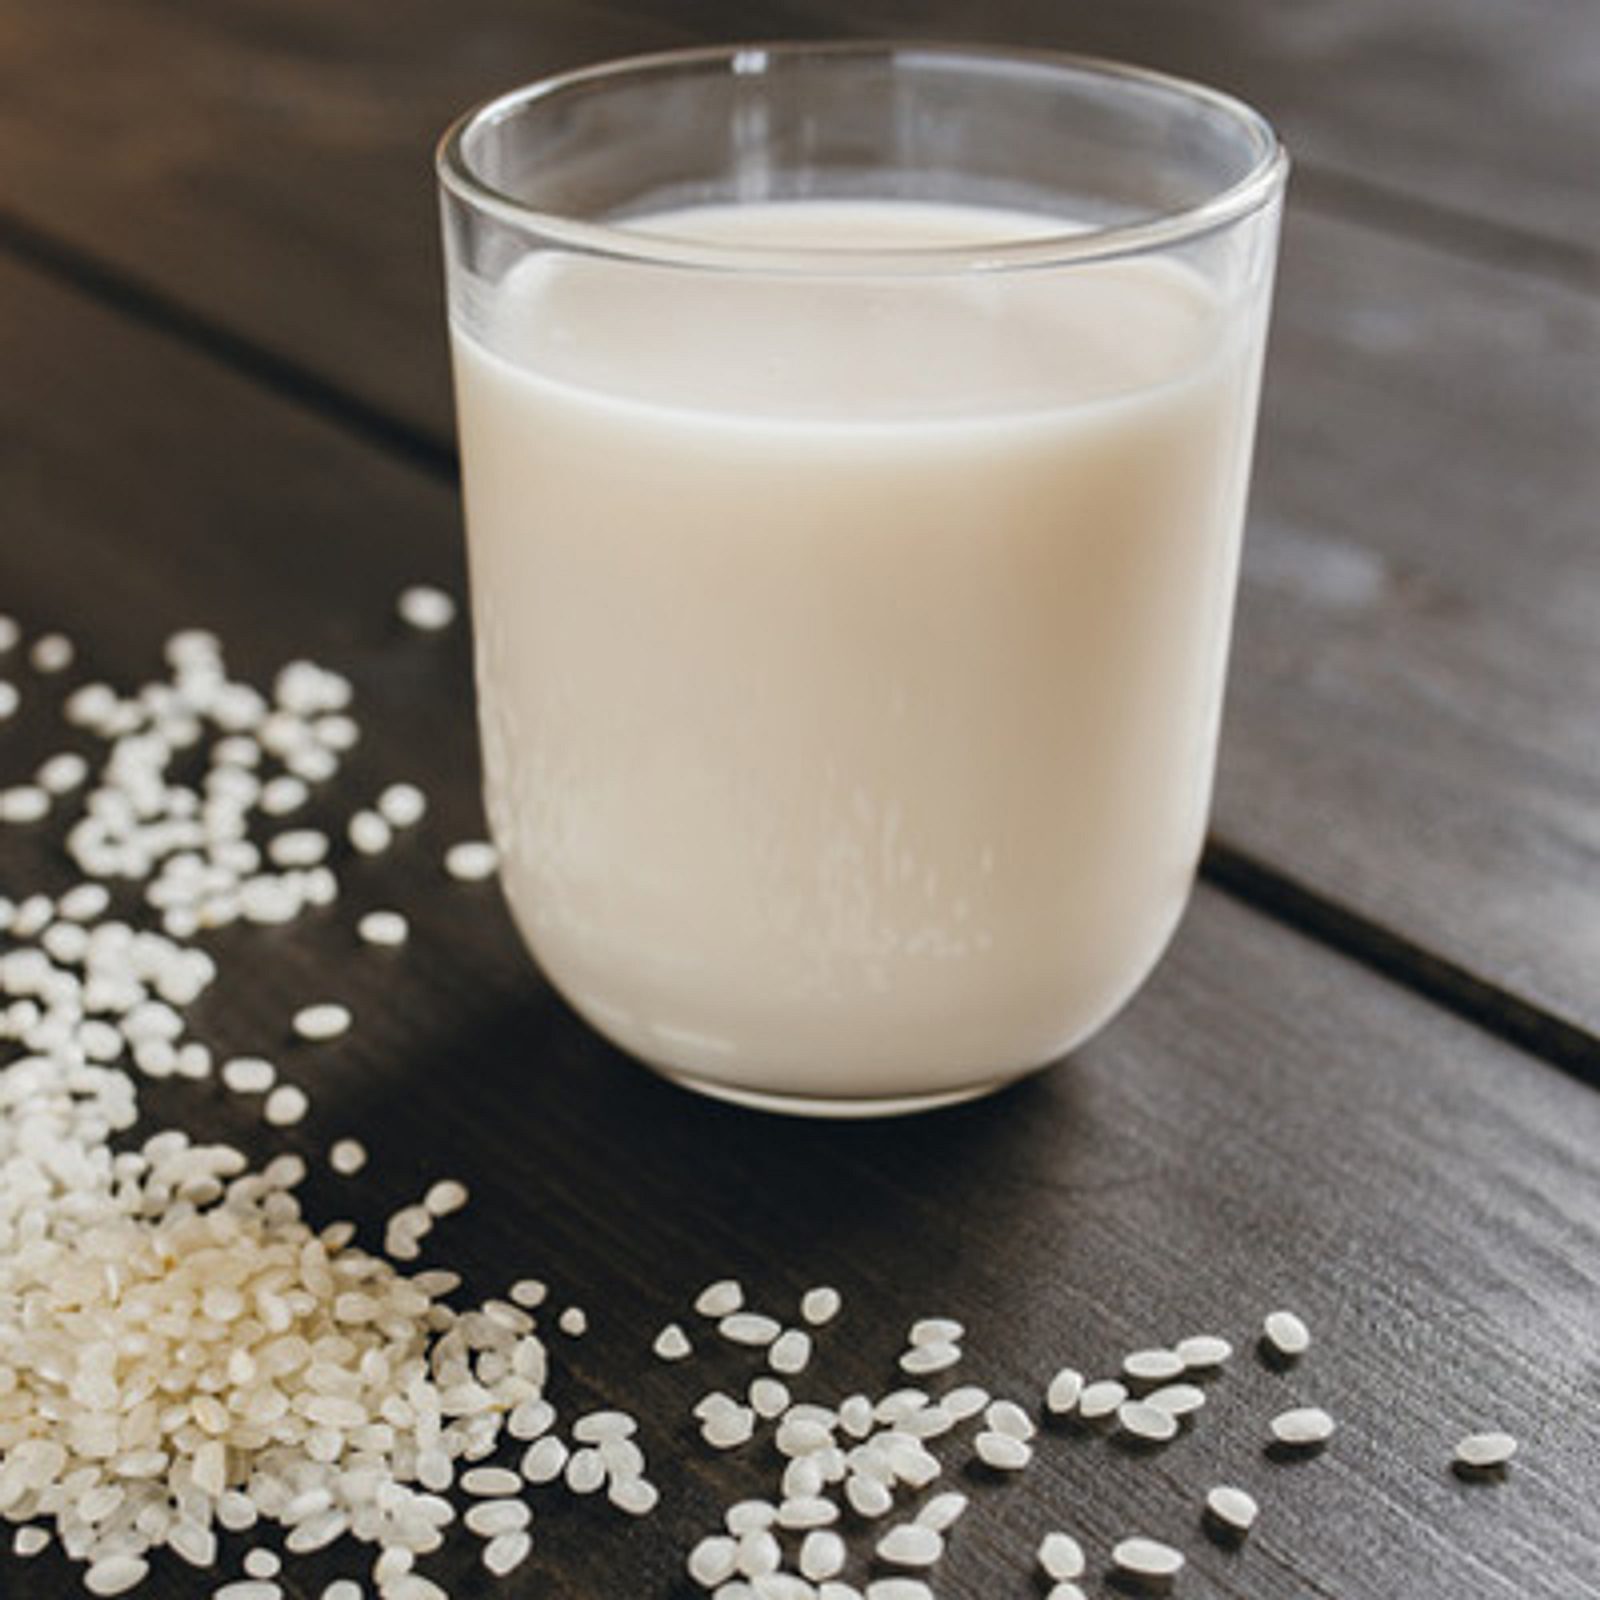 Reismilch enthält weder Laktose noch Gluten